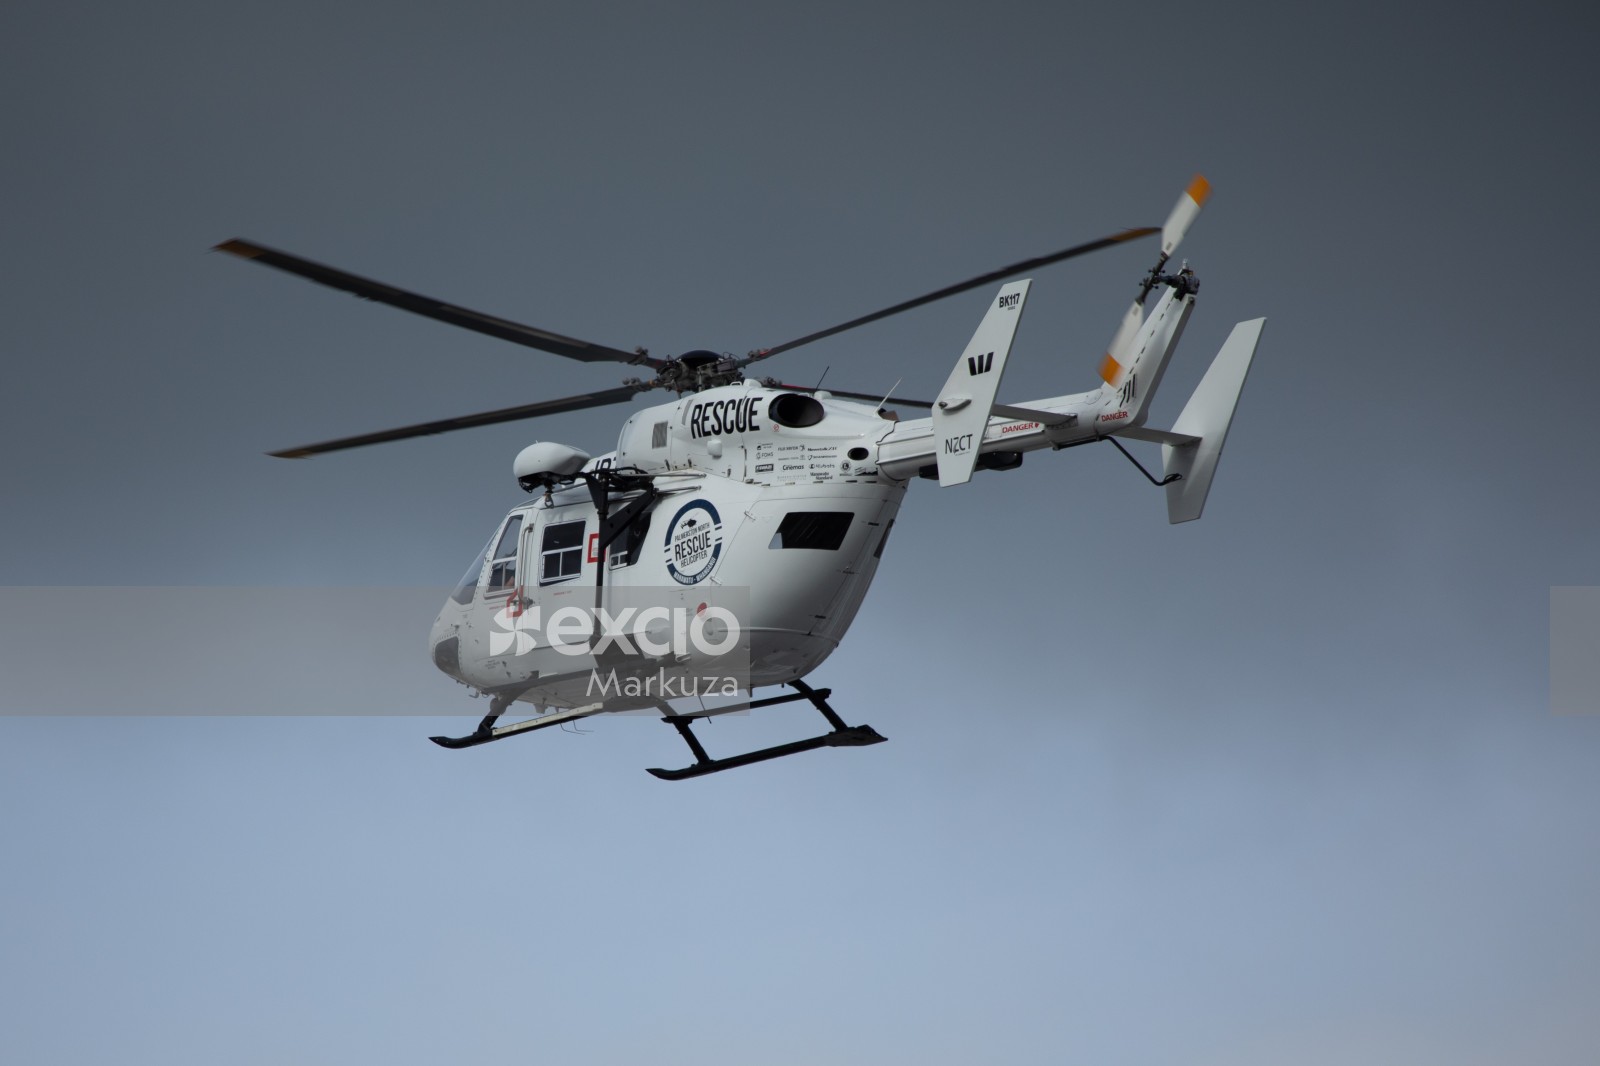 Palmerston North rescue chopper